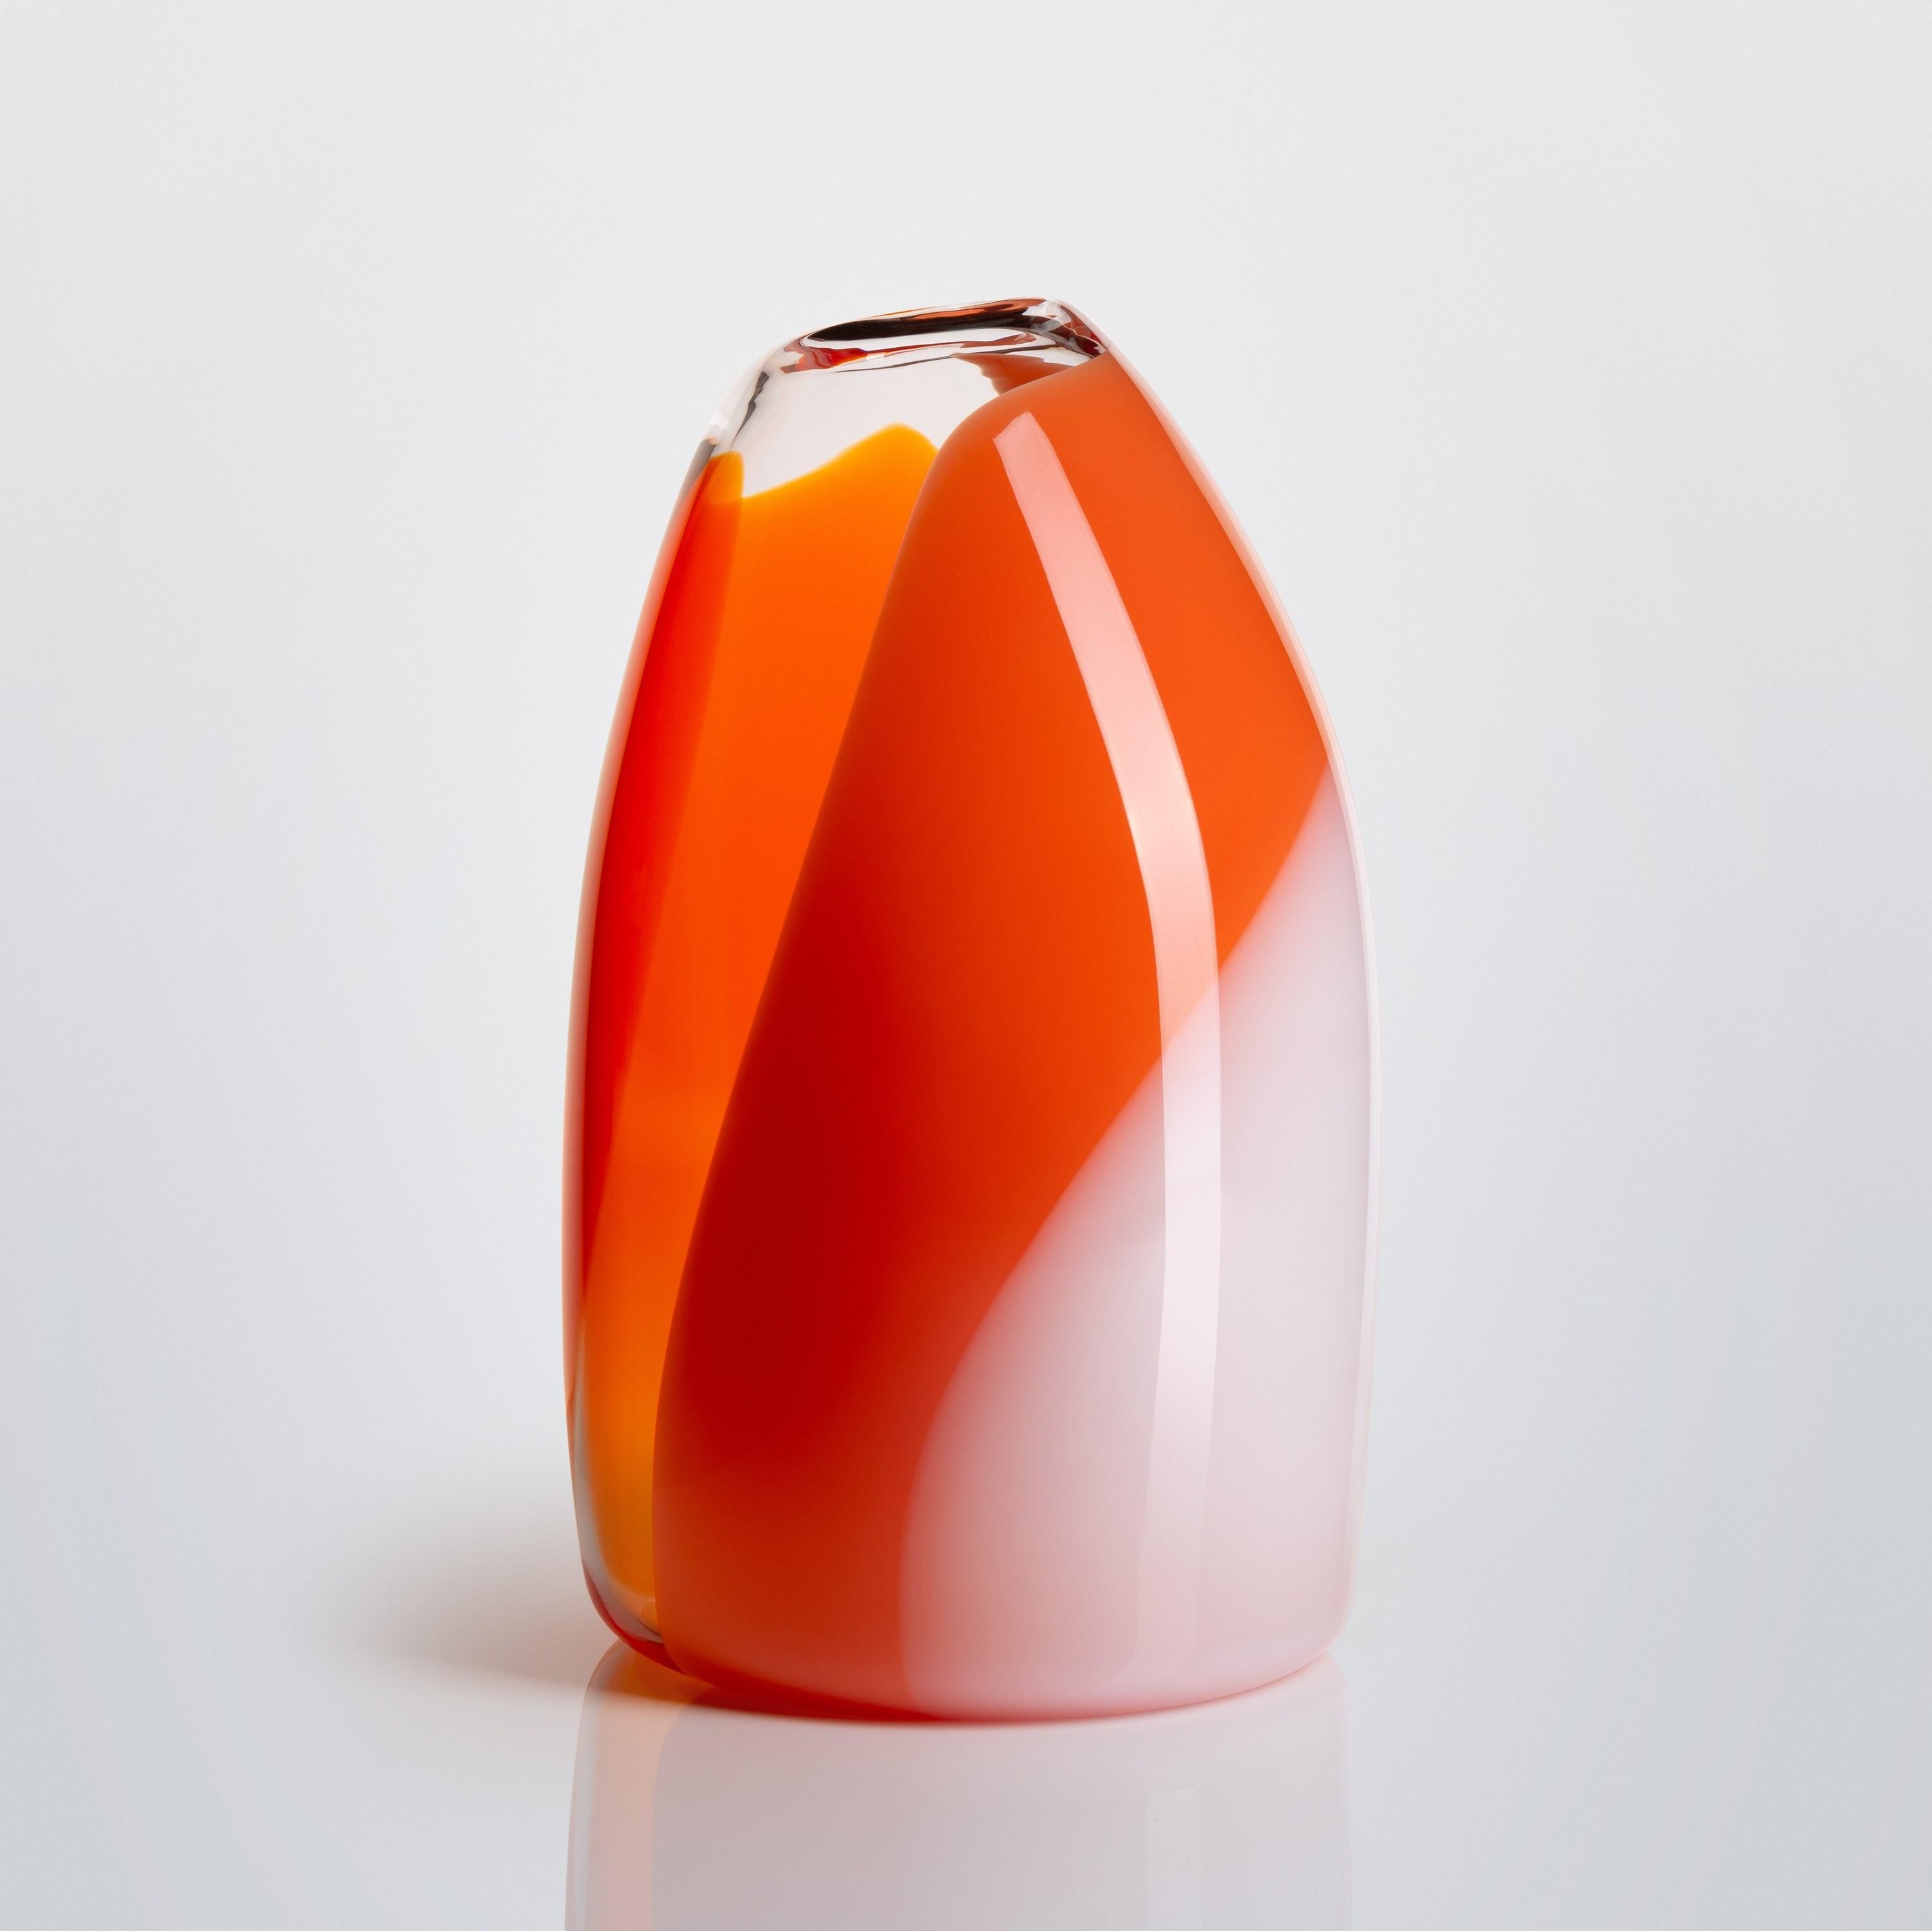 British Waves No 487, clear, red, orange & peach hand blown glass vase by Neil Wilkin